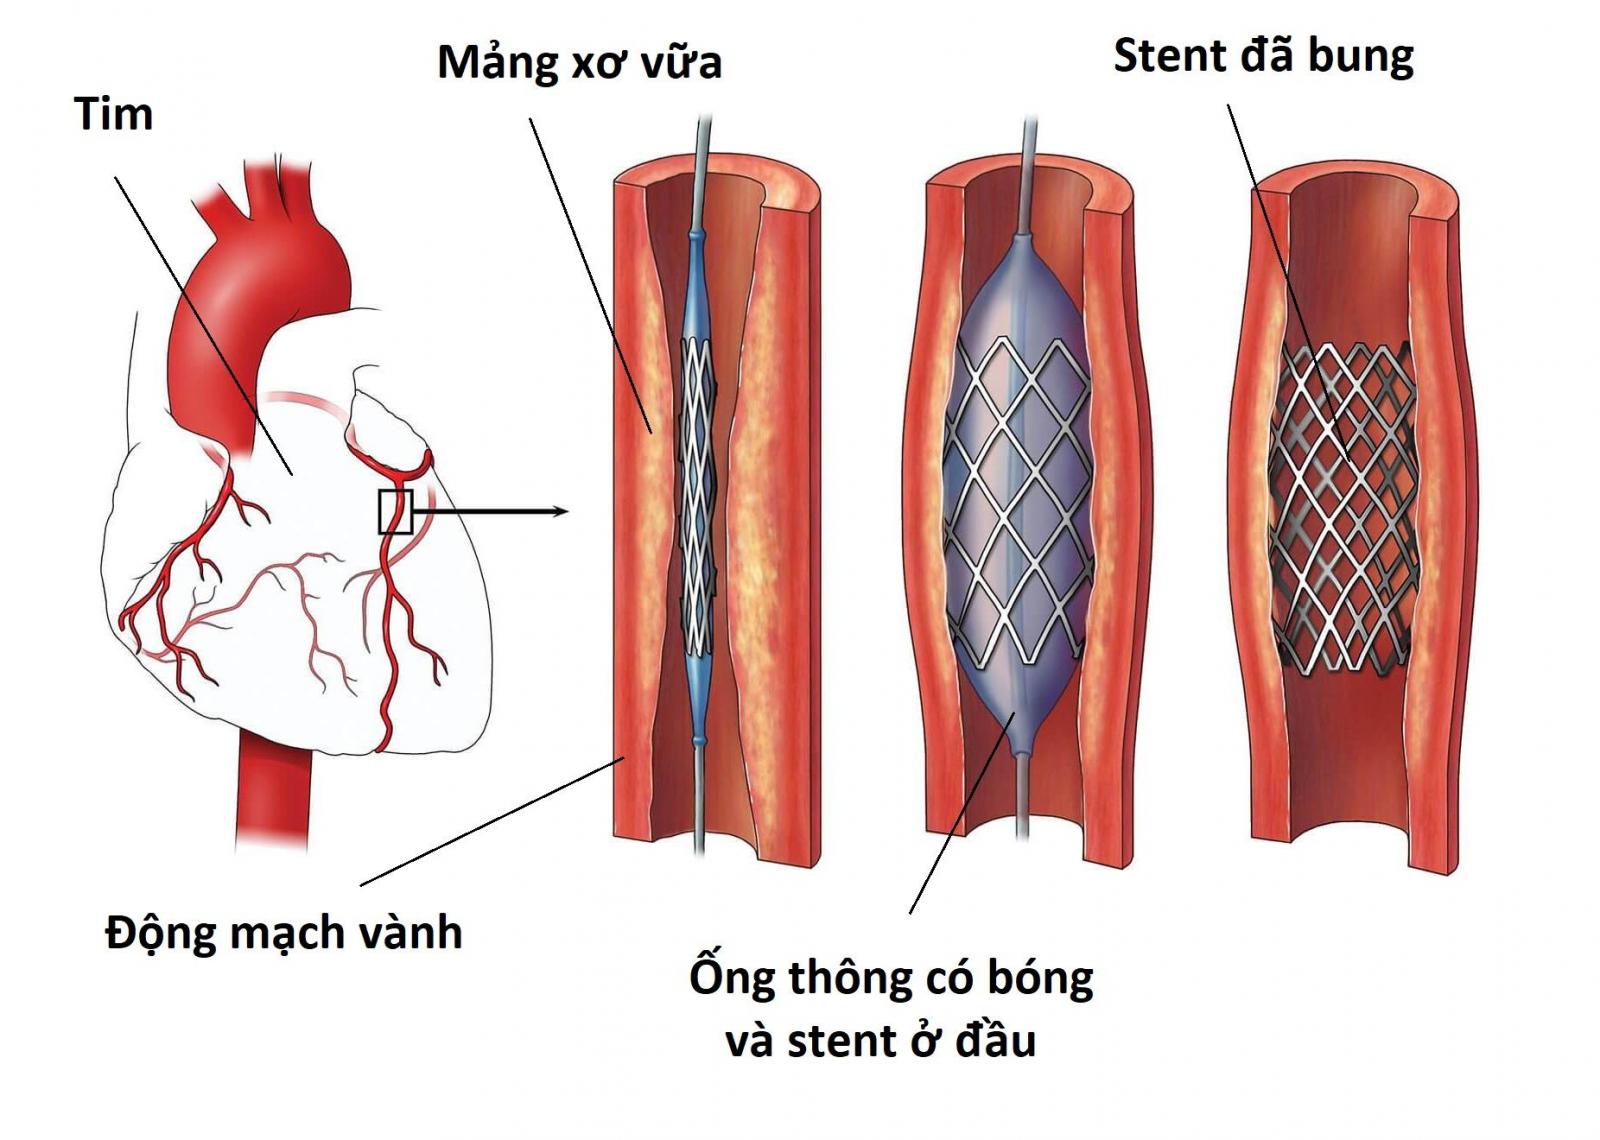 Kỹ thuật đặt stent mạch vành